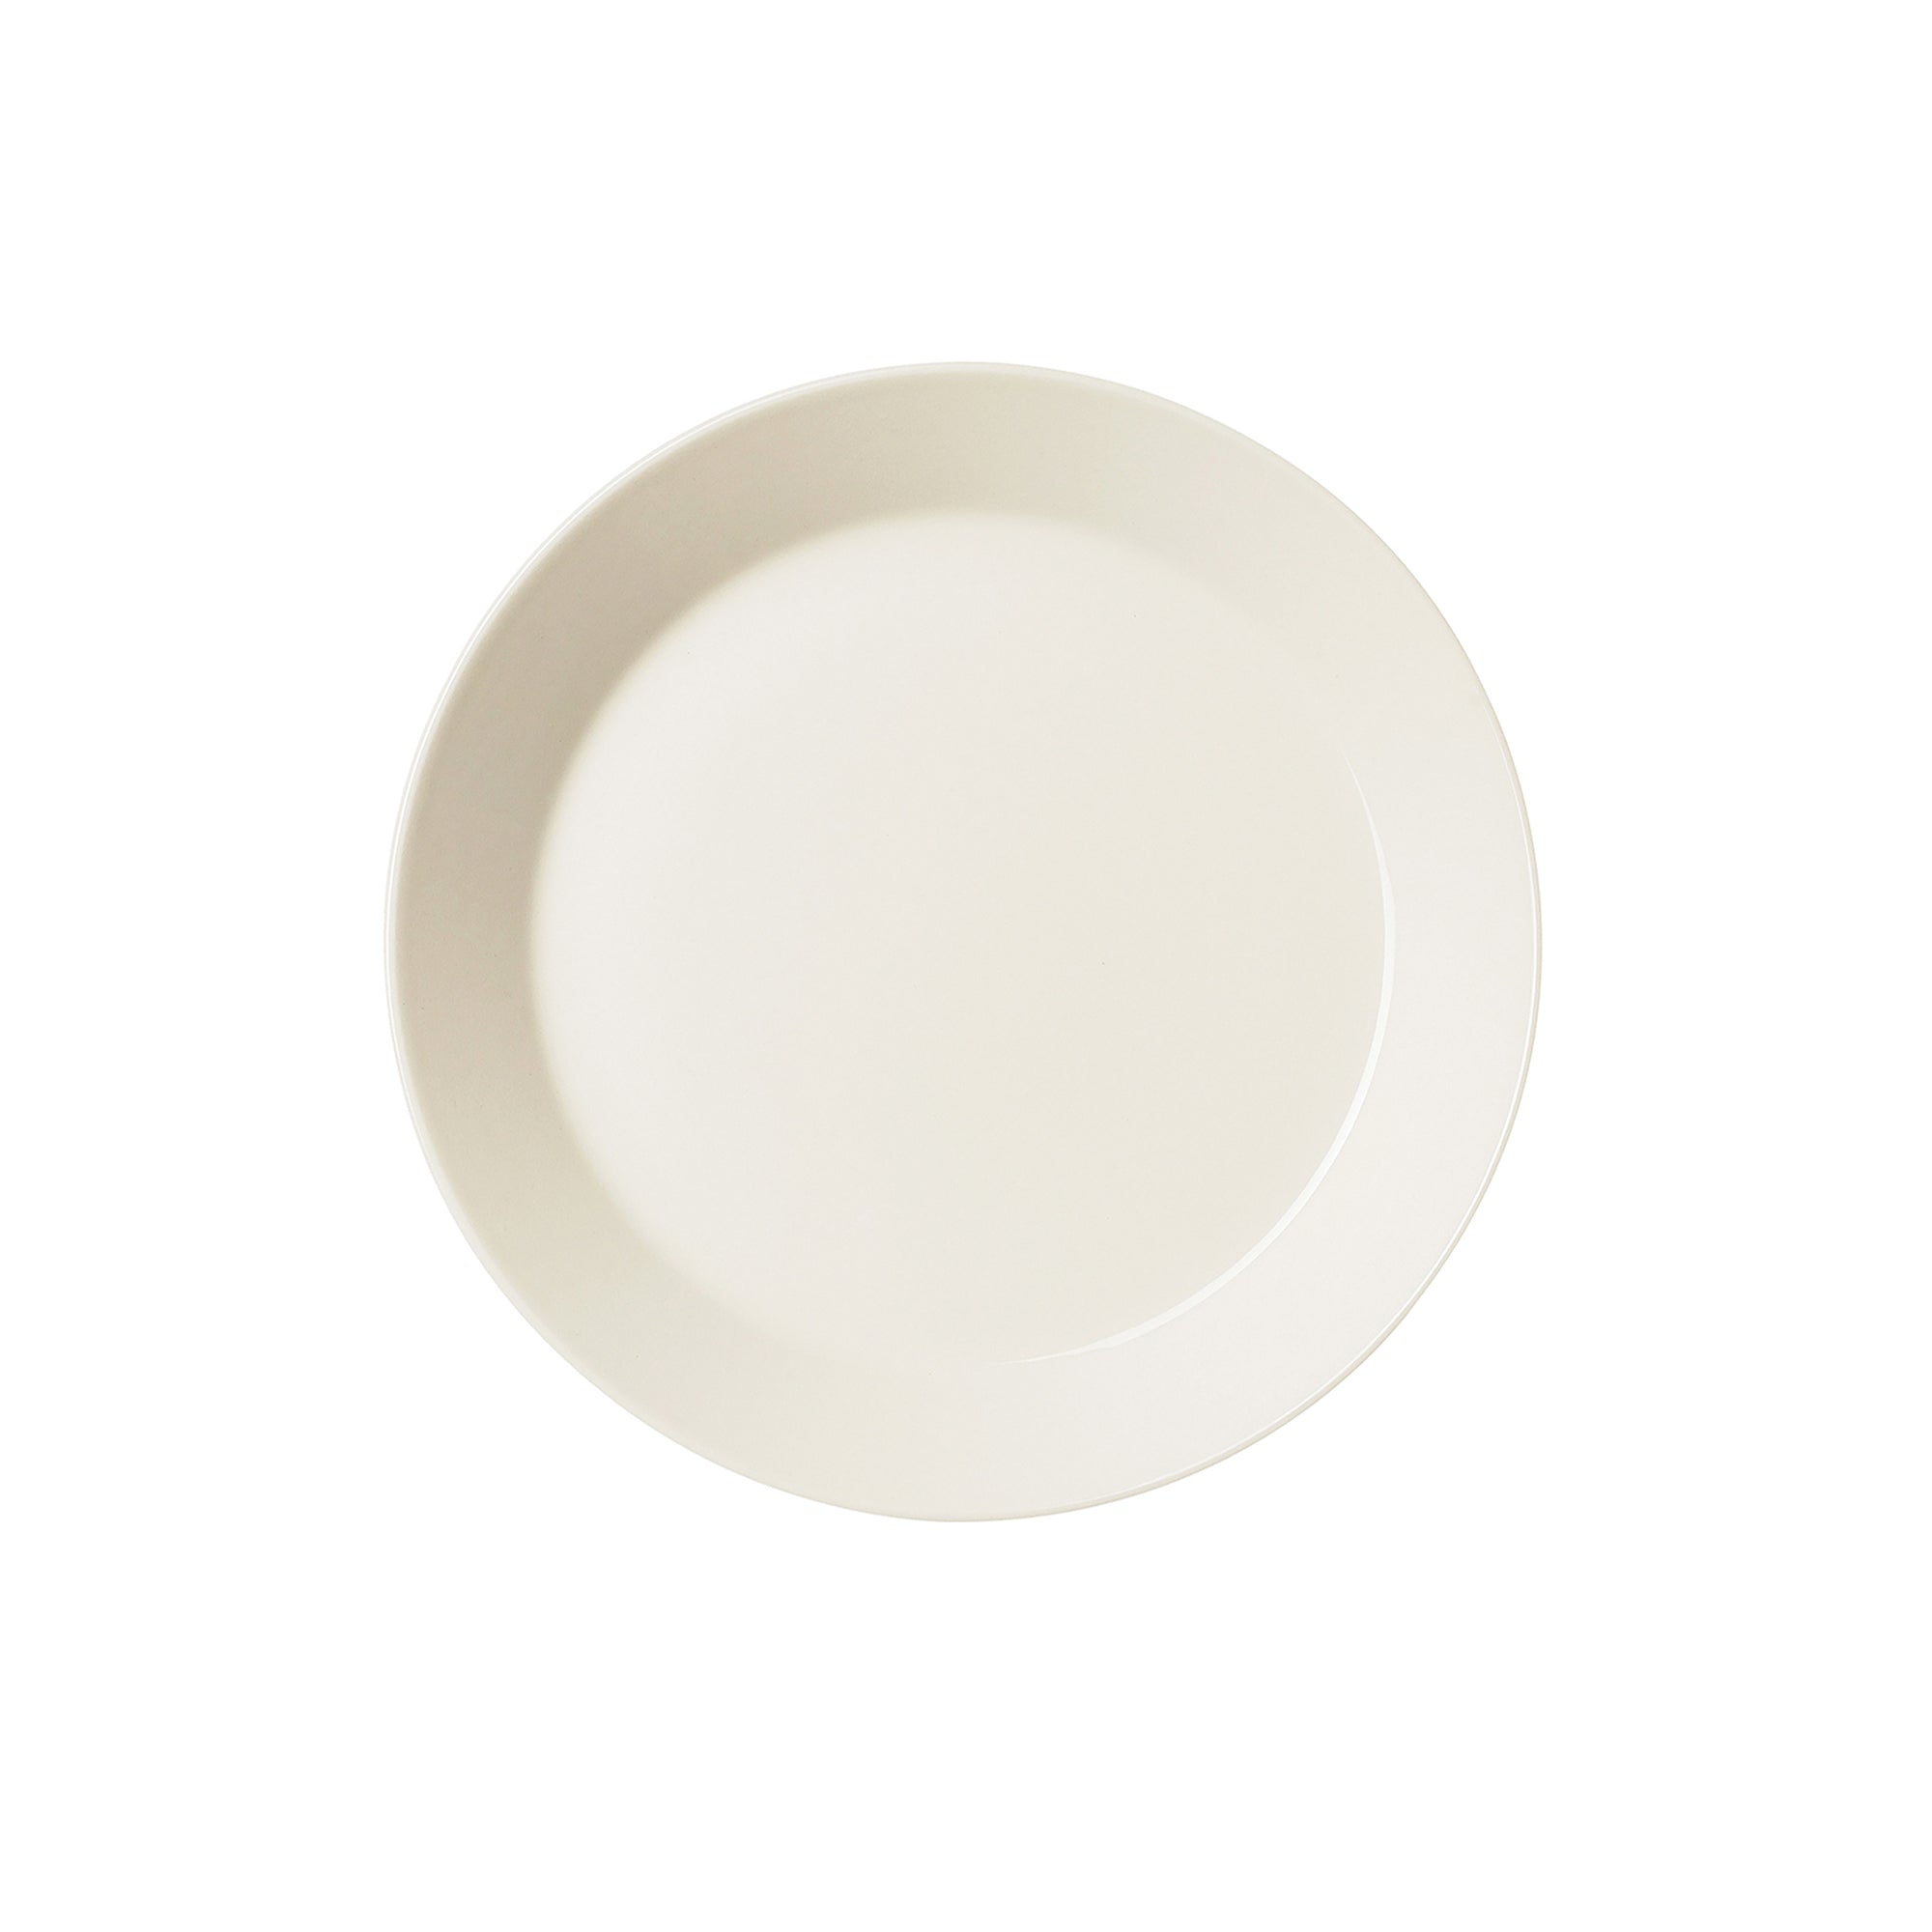 Teema White Salad Plate, 8.5"